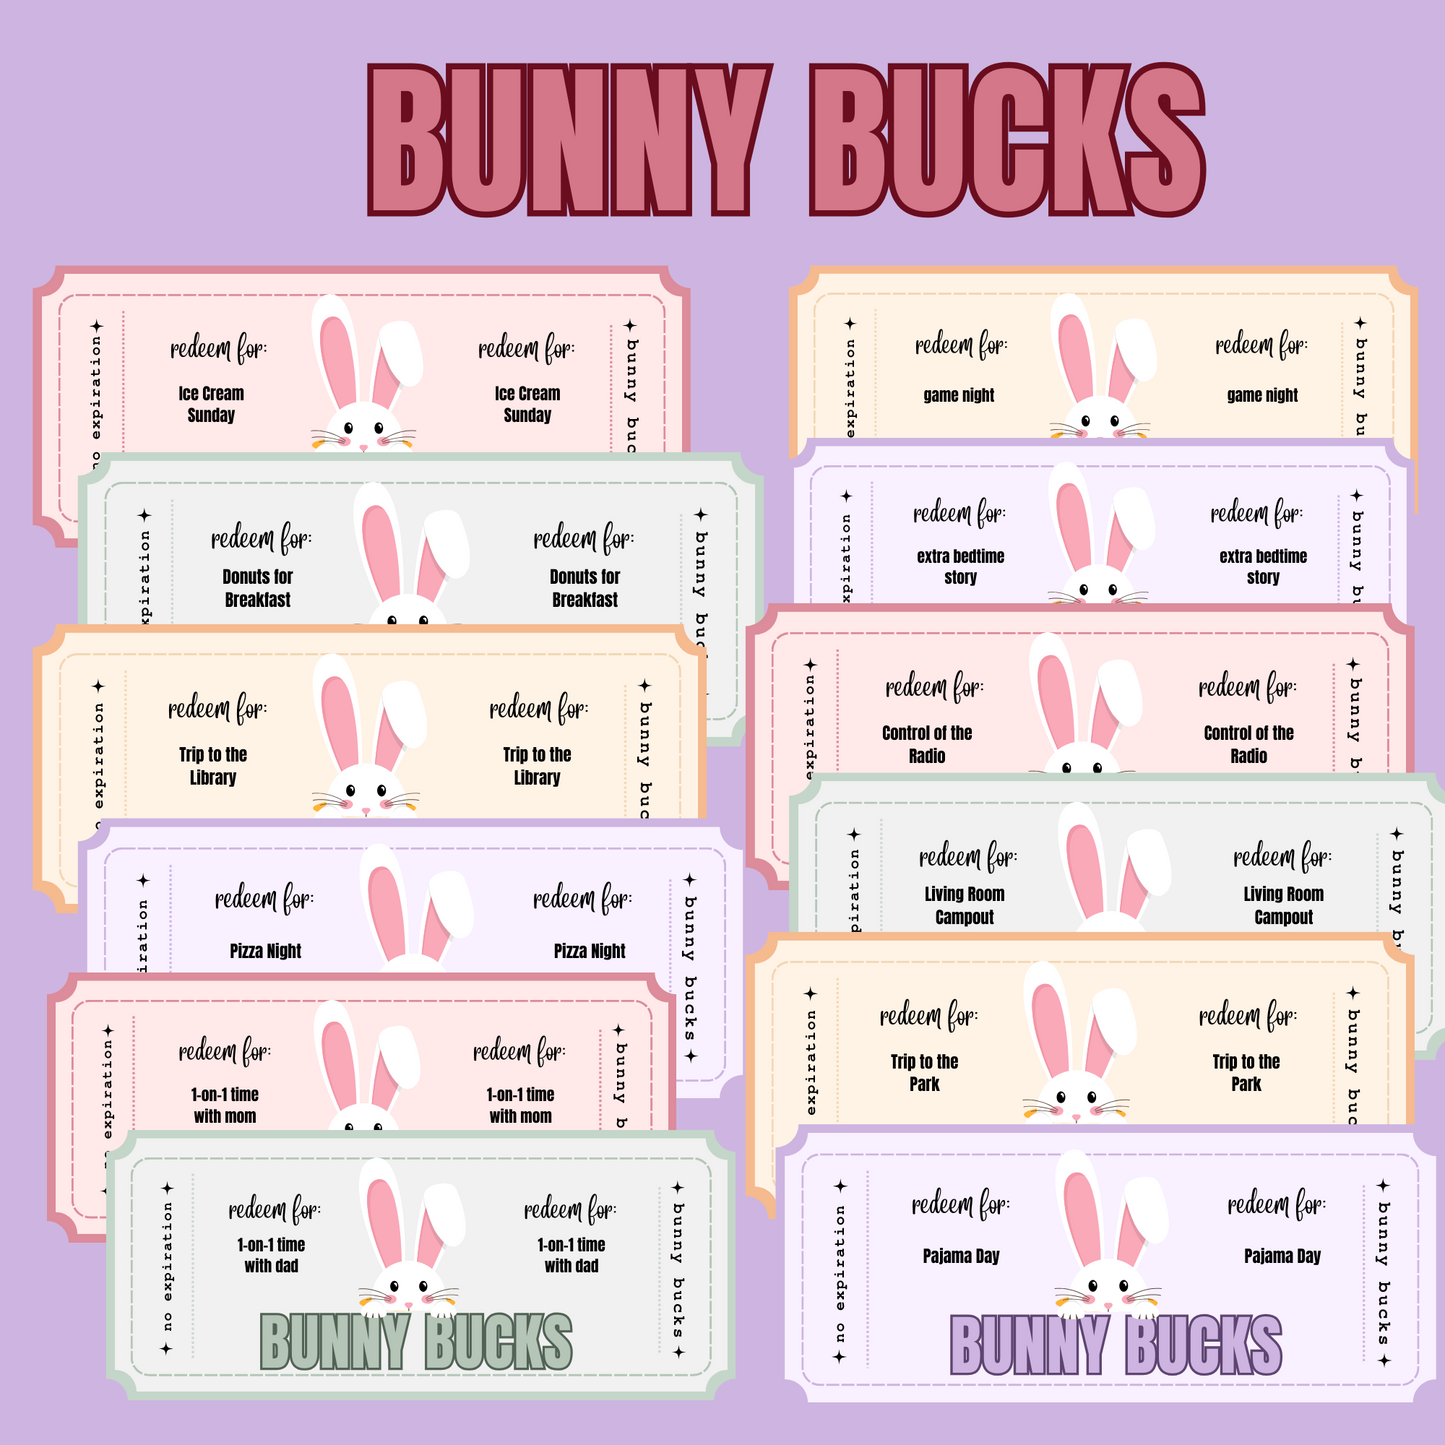 Bunny Bucks